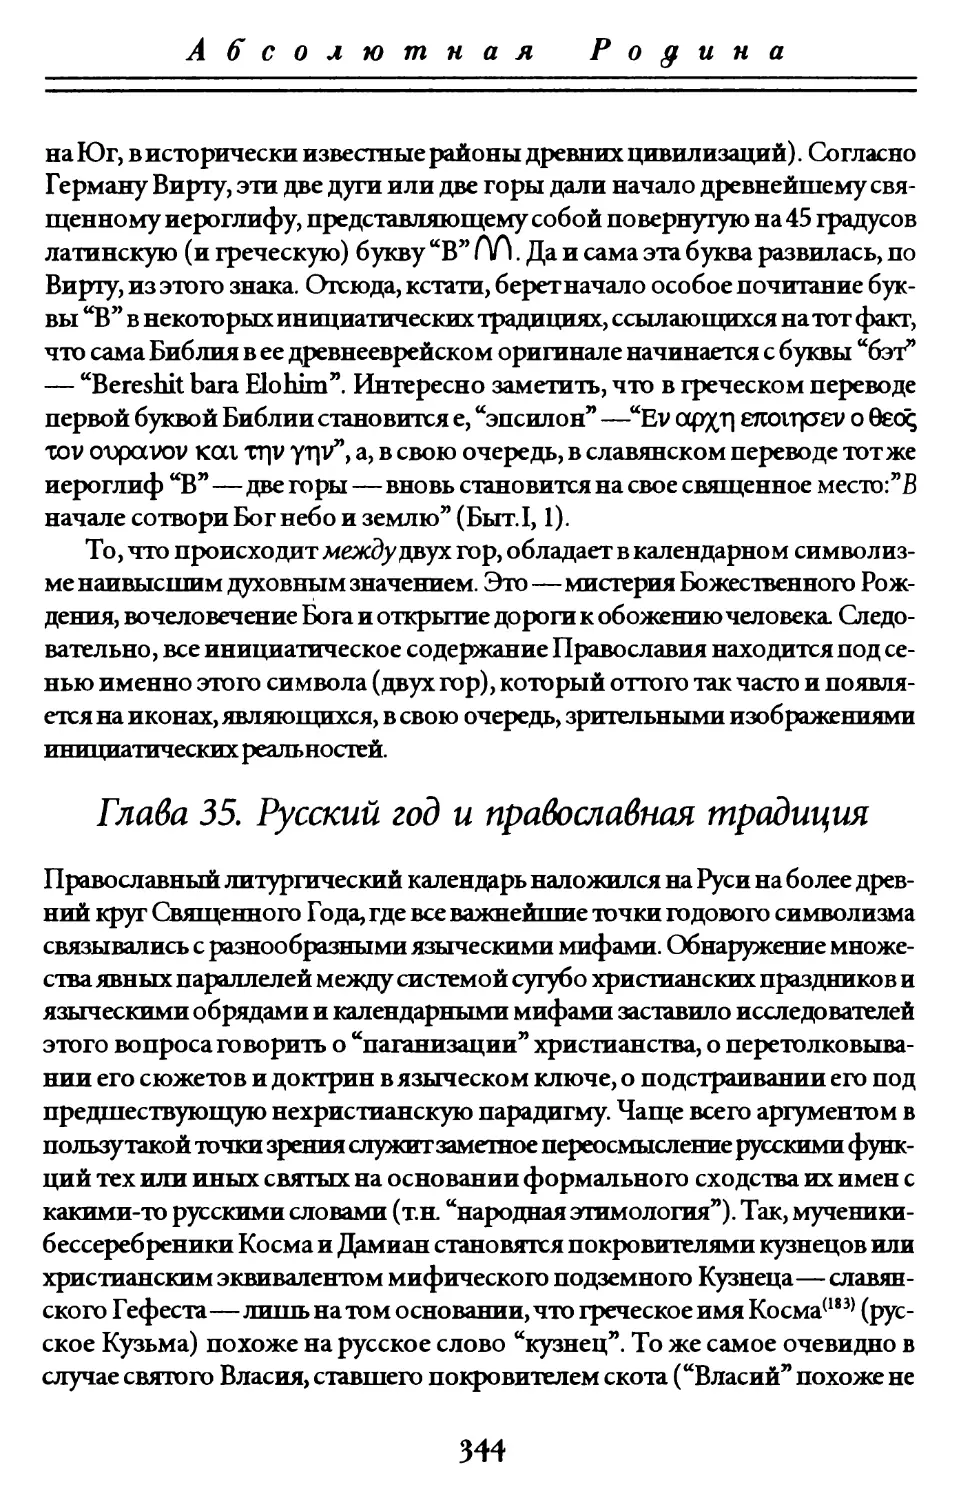 Глава 35. Русский год и православная традиция